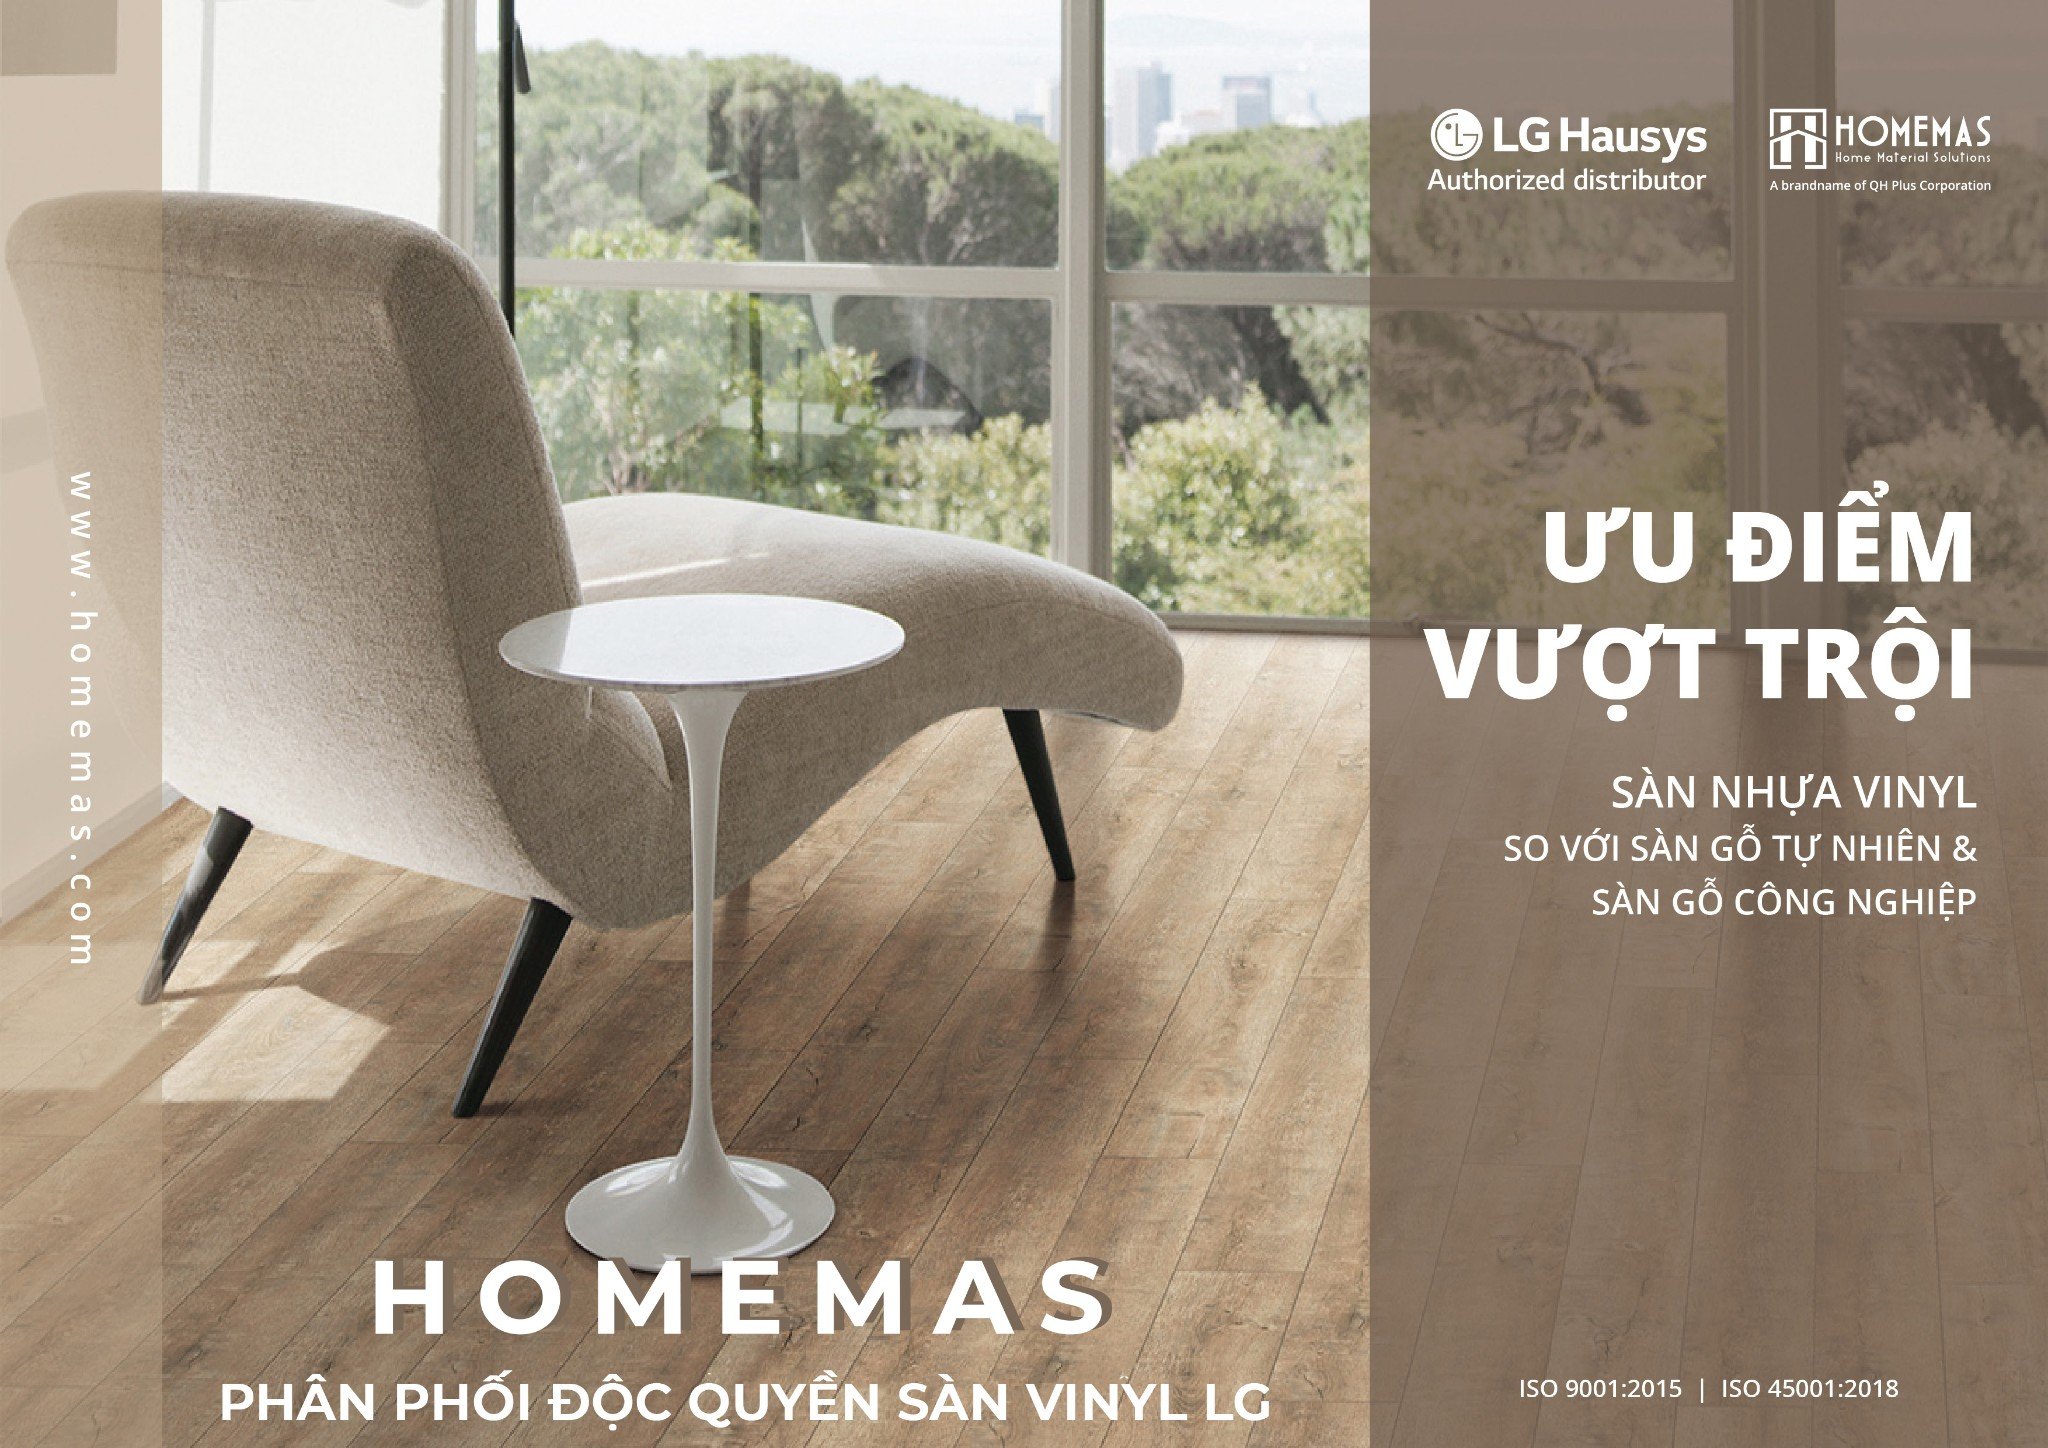 Homemas phân phối độc quyền các sản phẩm sàn vinyl LG độc quyền tại Việt Nam